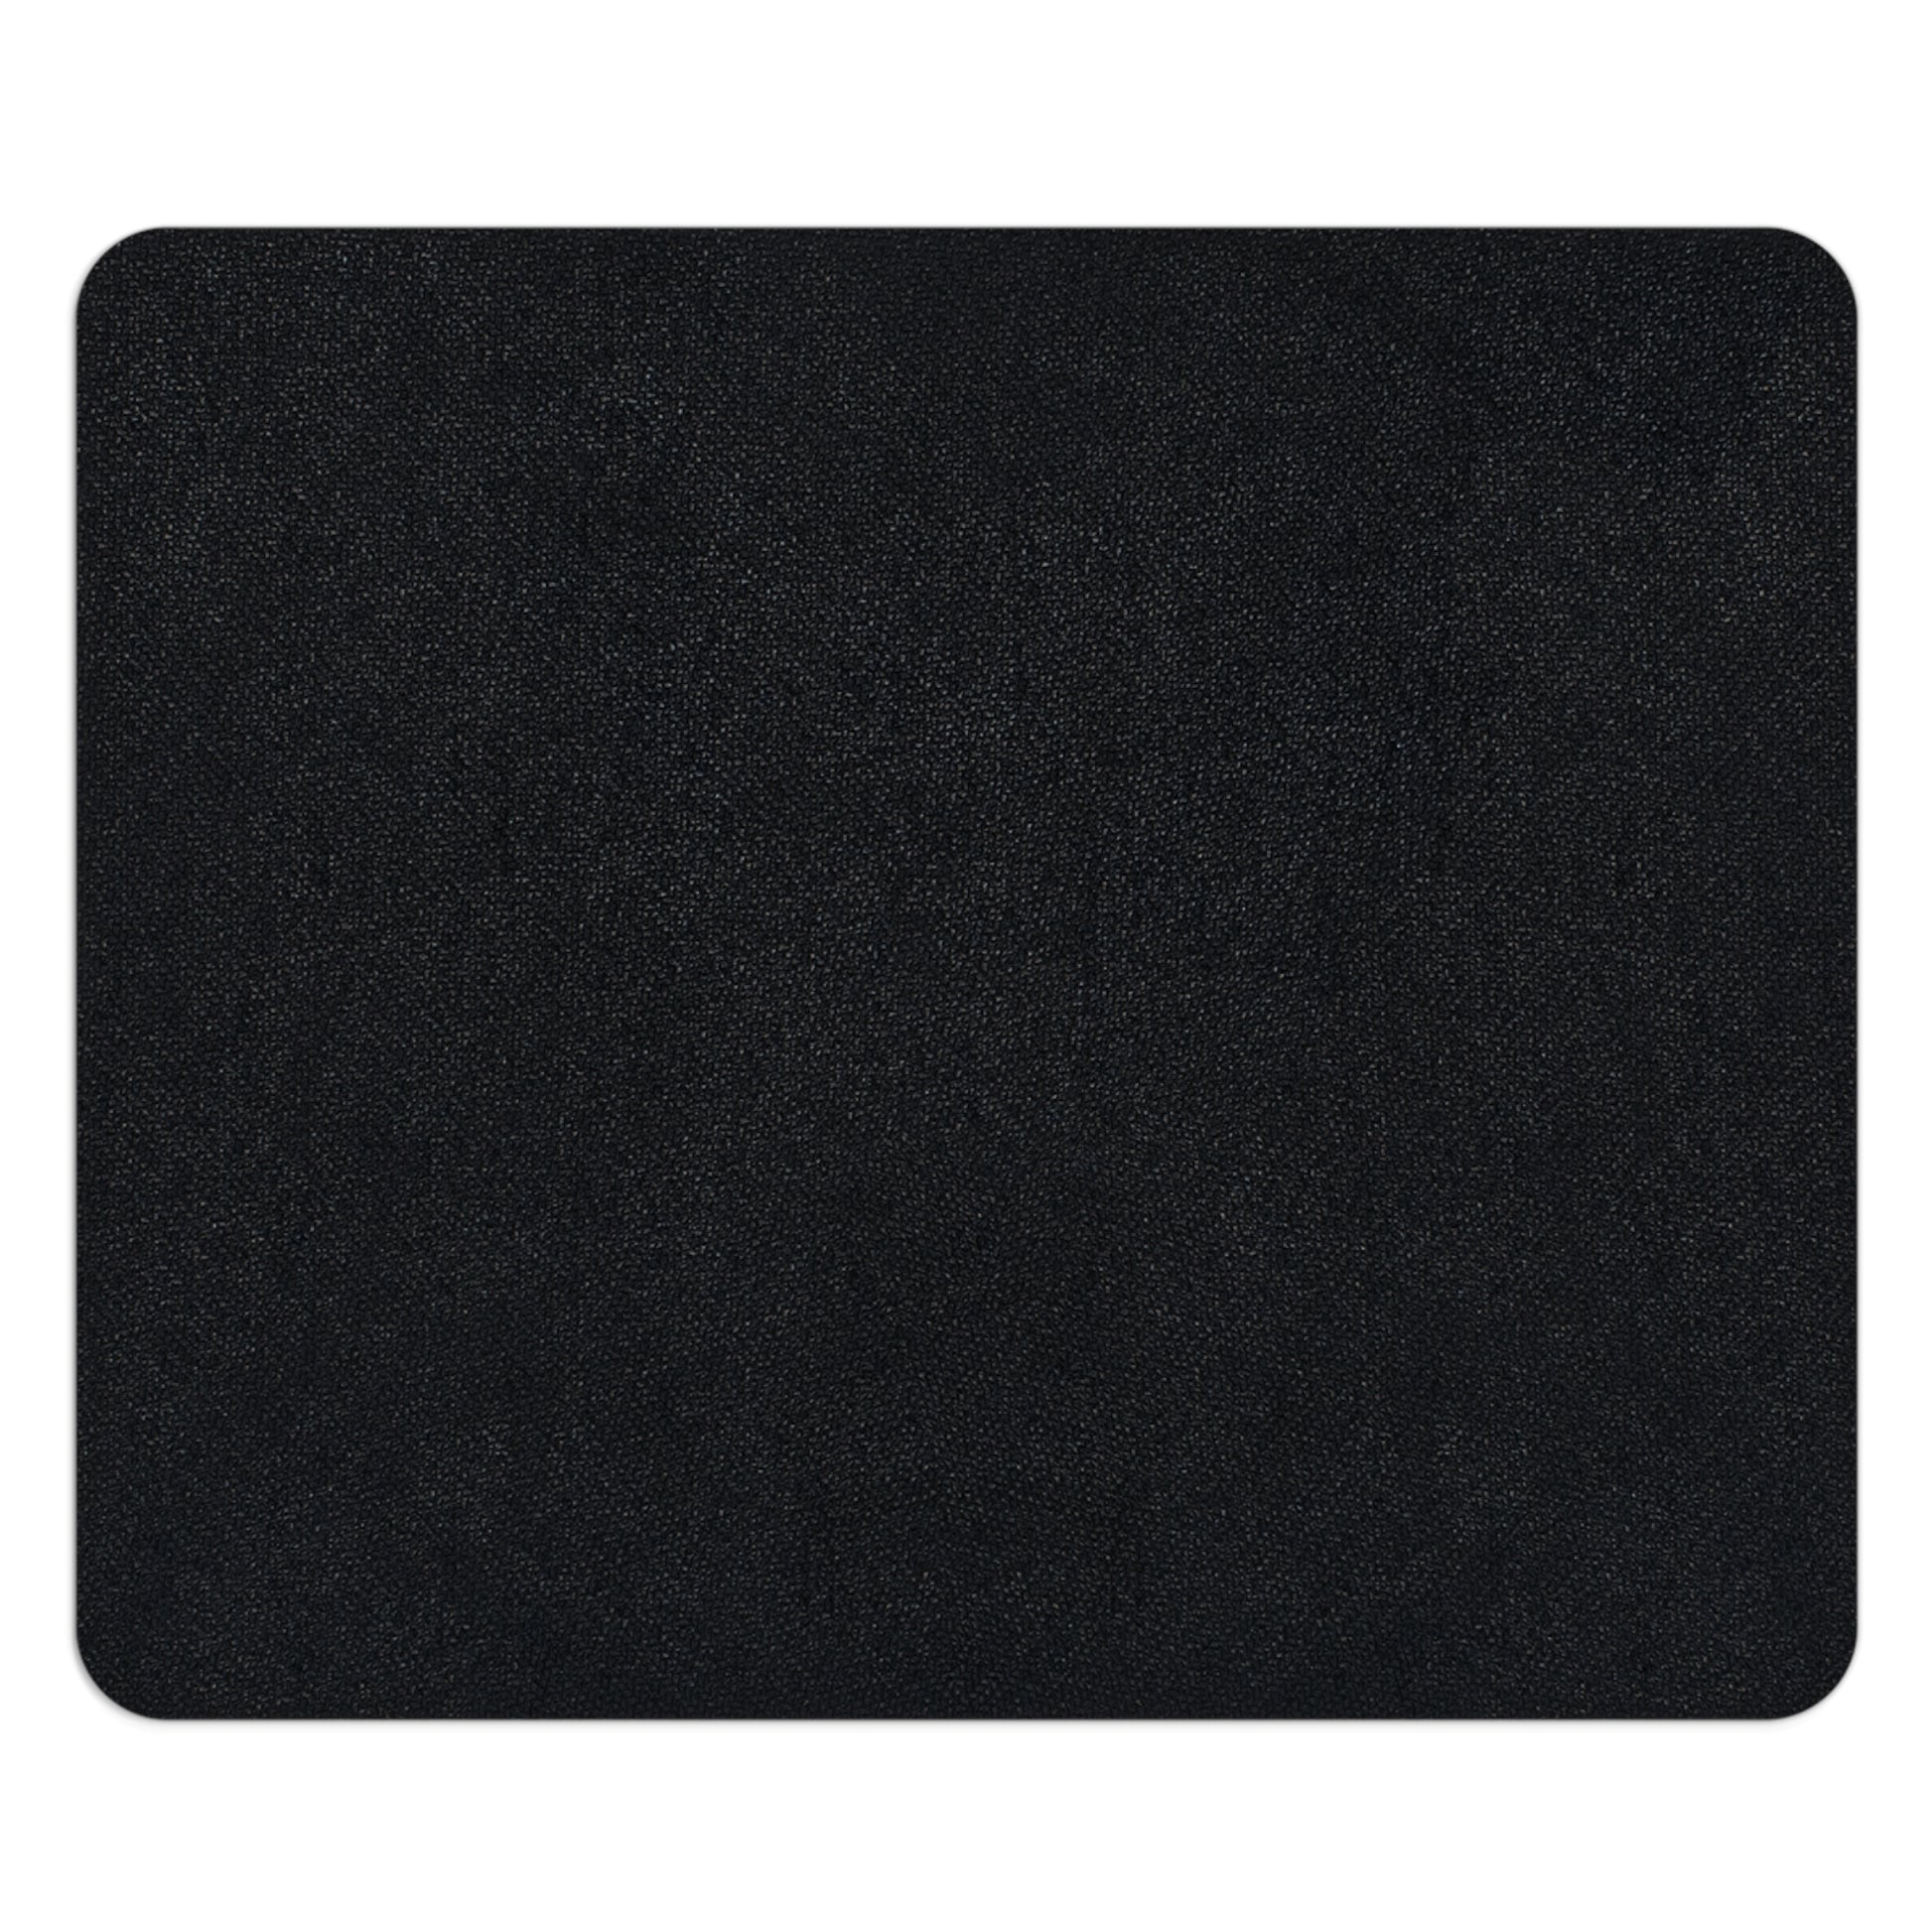 the back of the rectangular mouse pad's Neoprene non-slip rubber bottom